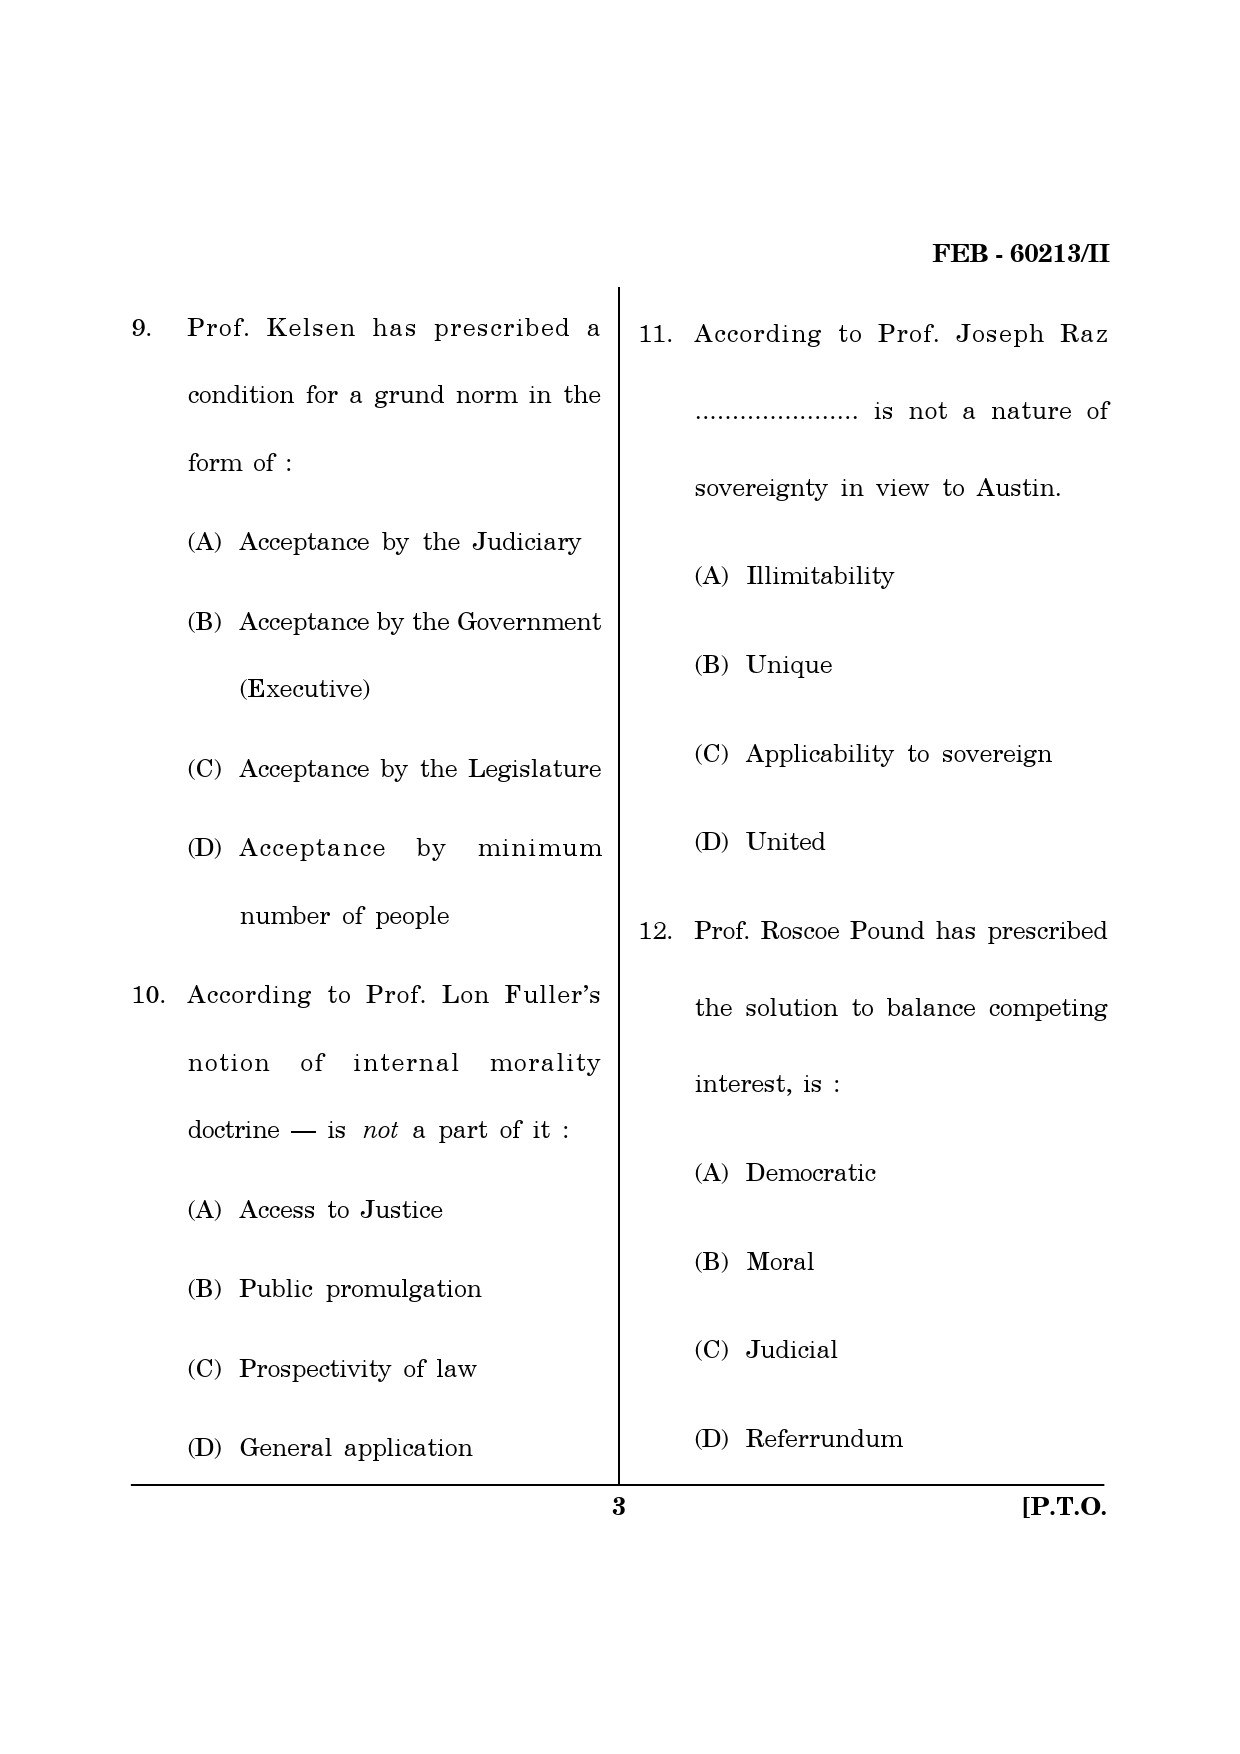 Maharashtra SET Law Question Paper II February 2013 3